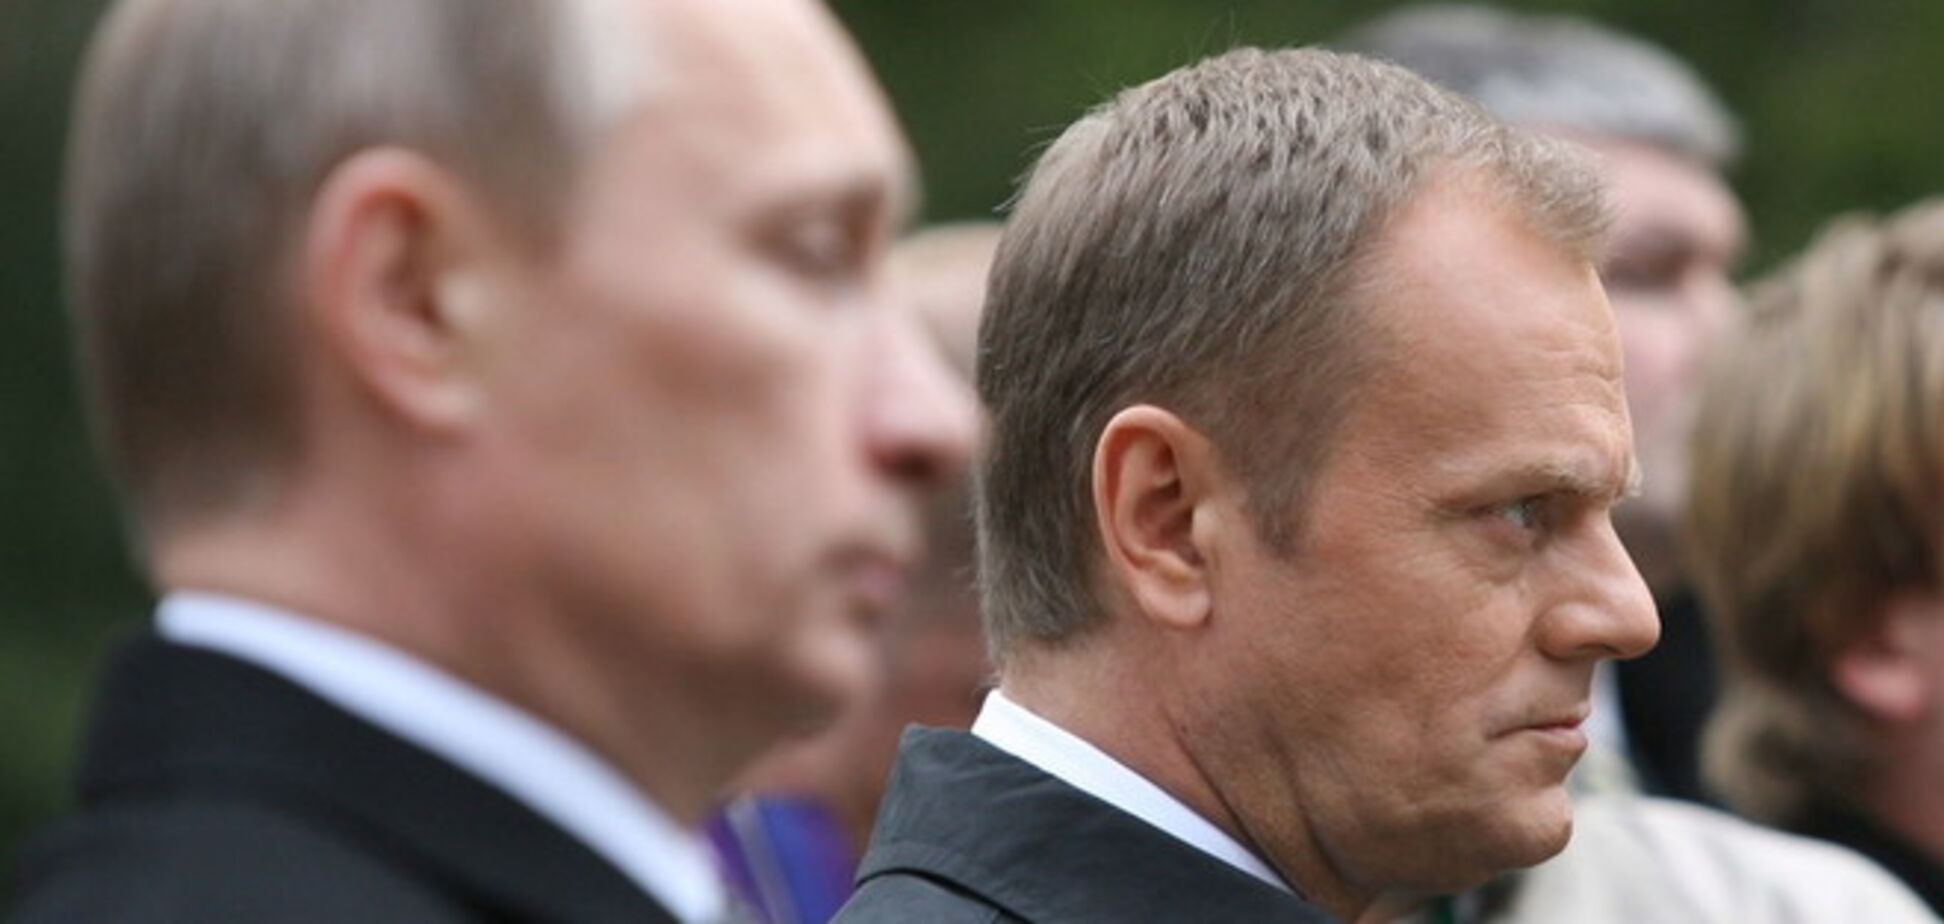 Польские СМИ напомнили: Туск назвал Путина 'своим человеком в Москве' в 2008 году после скандальной встречи